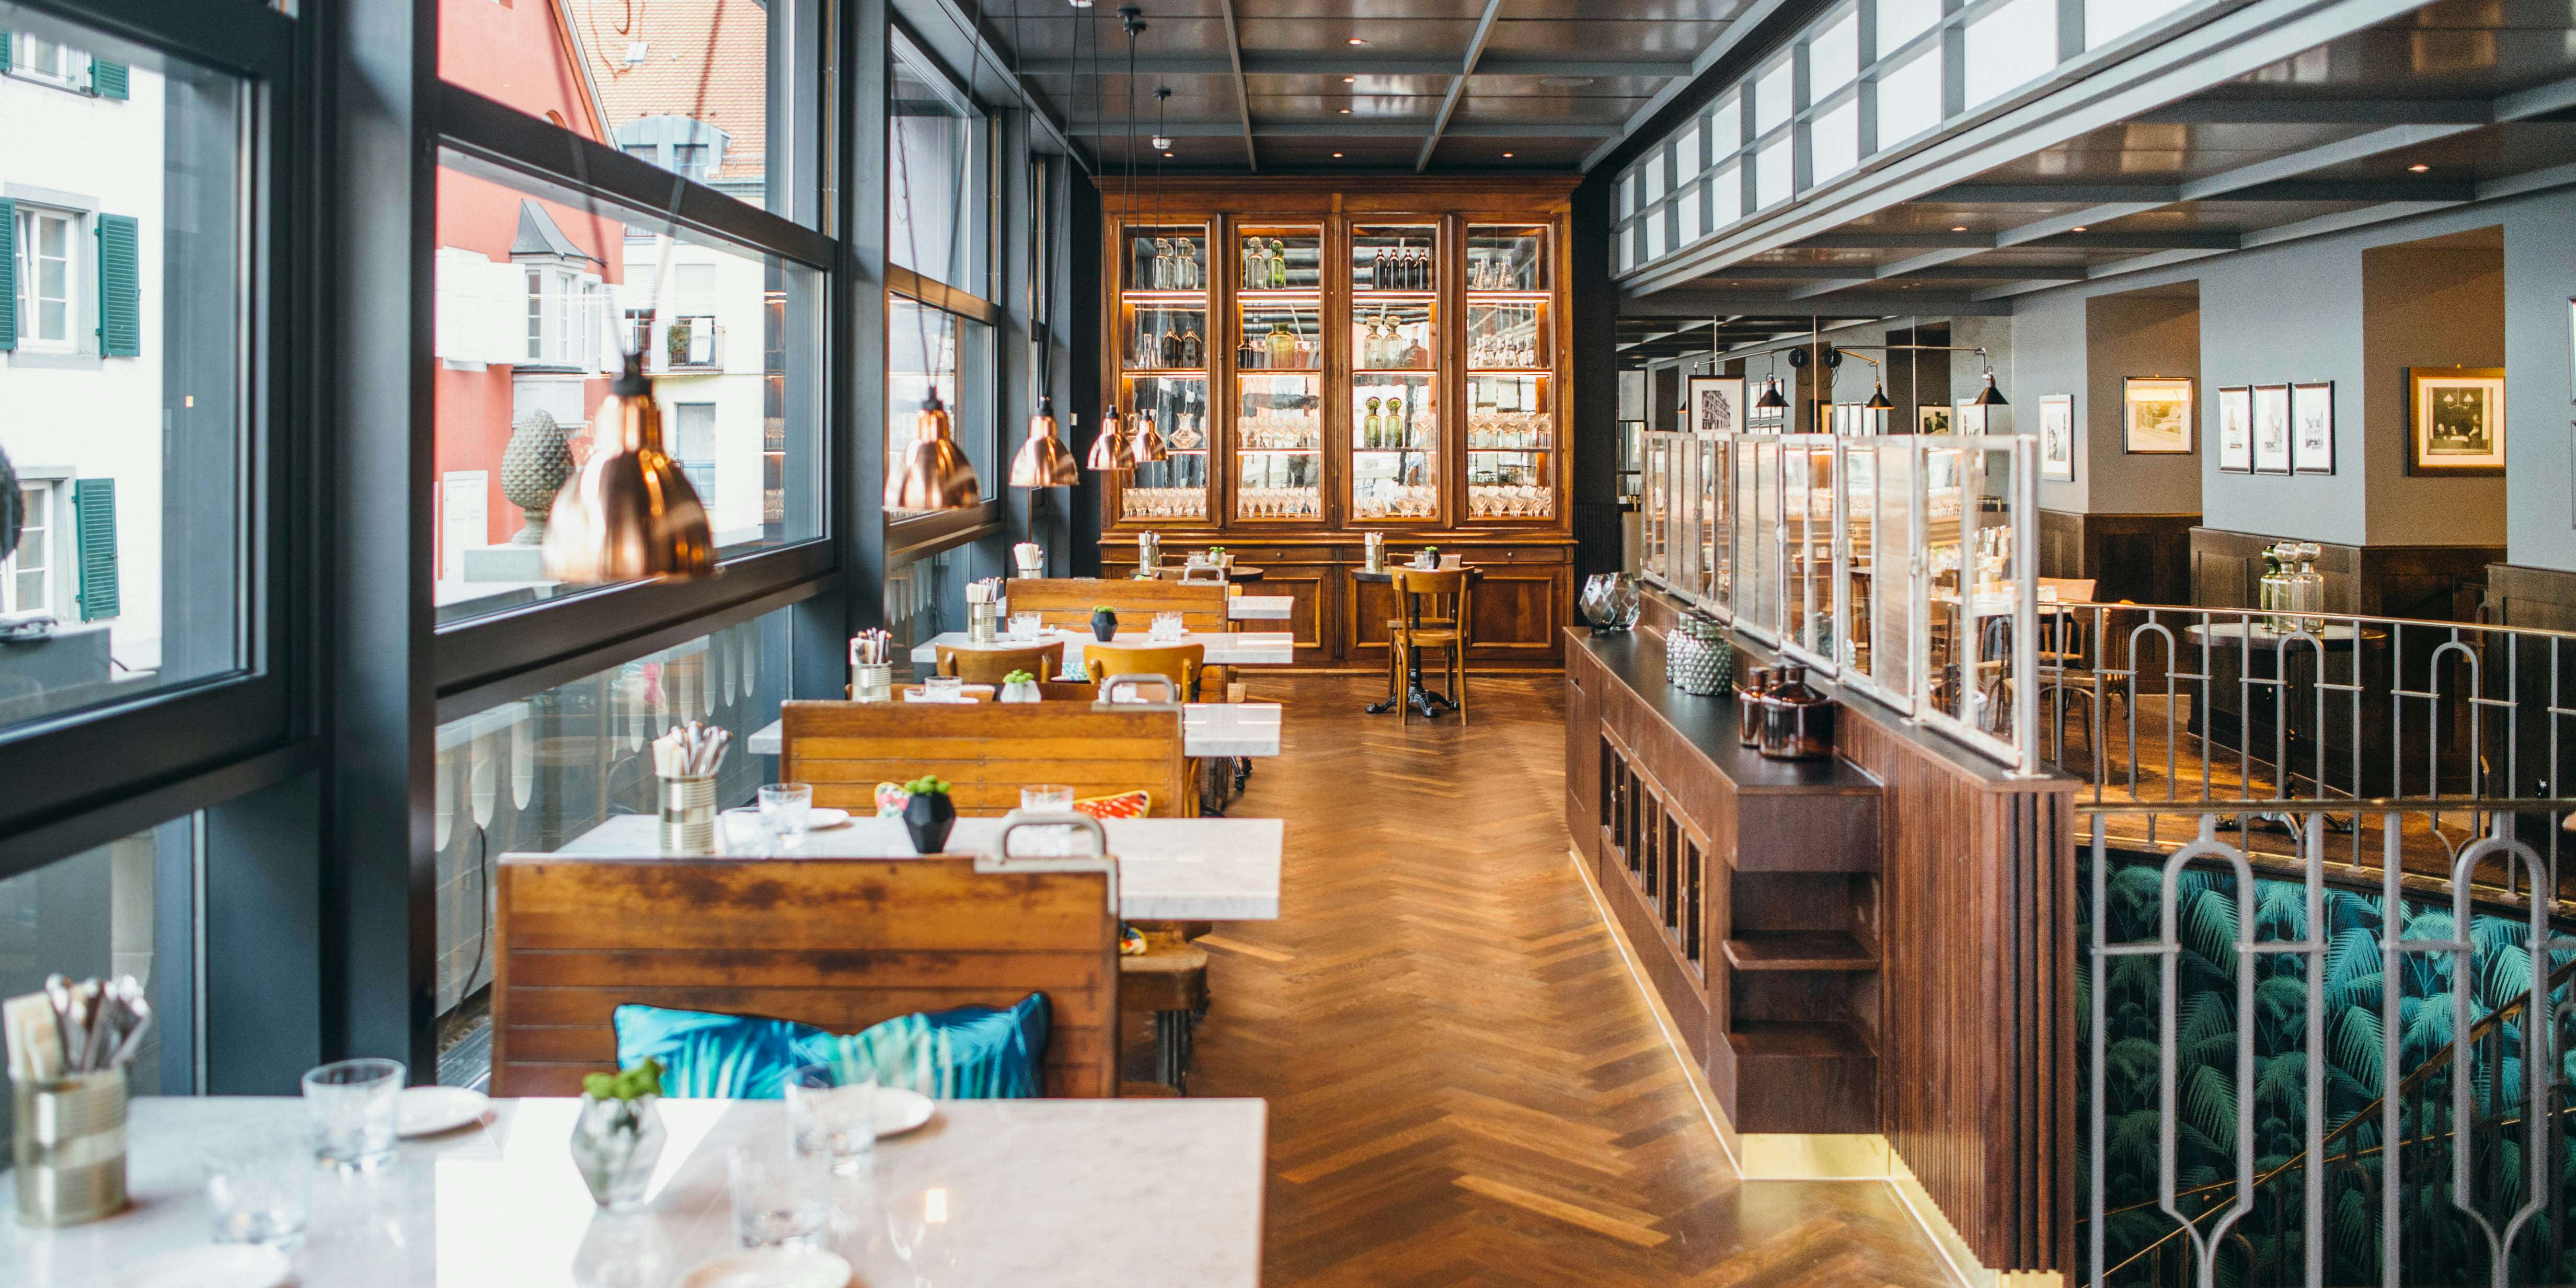 Brasserie Colette Konstanz - Modernes Französisches Restaurant in Konstanz mit gemütlicher Einrichtung